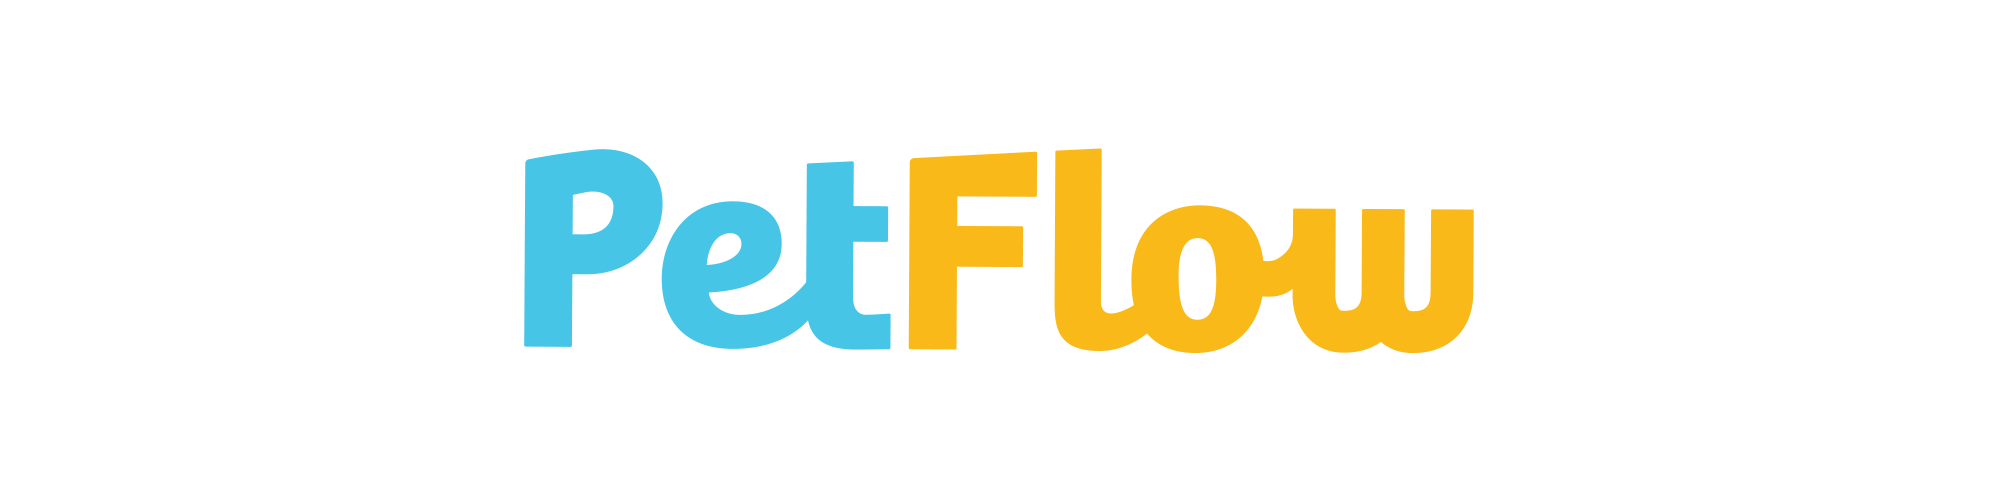 PetFlow logo.